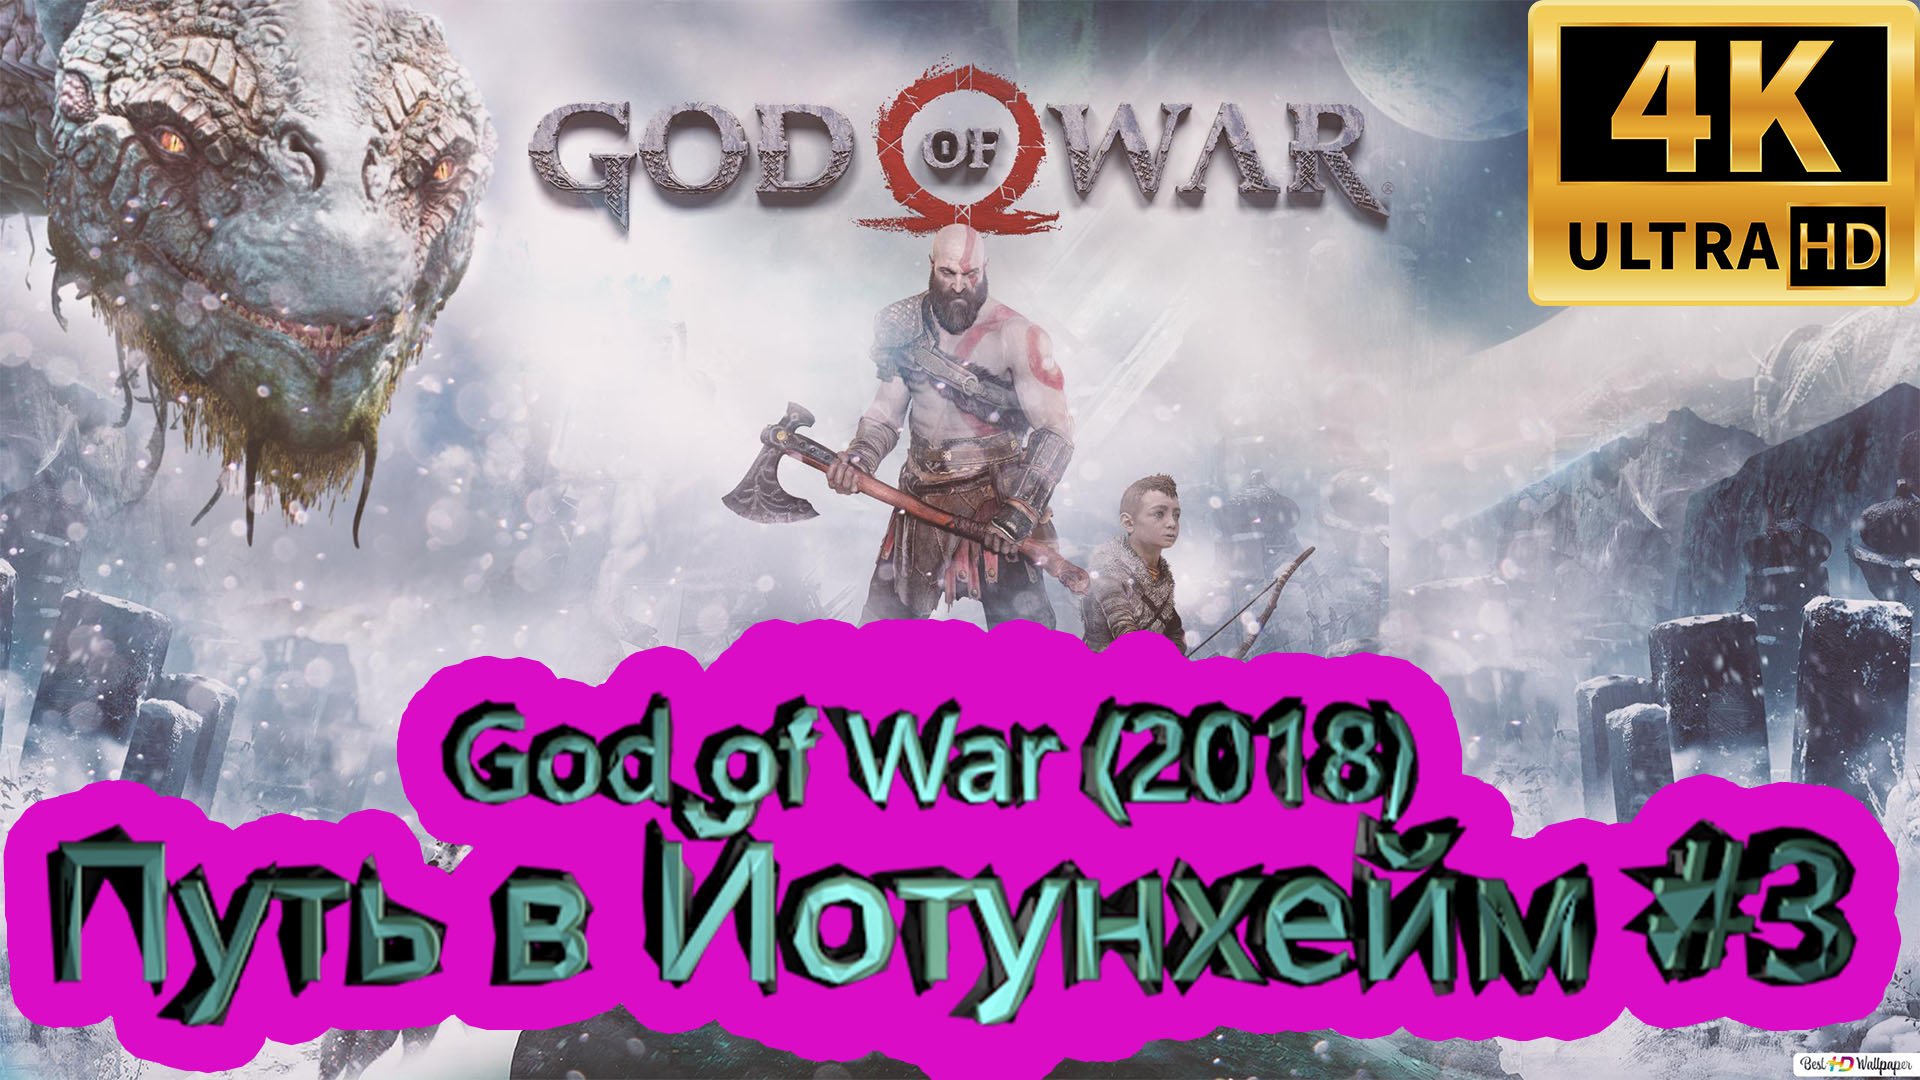 God of War прохождение (2018) [4K]  ► Путь в Йотунхейм #3 ► ГОД ОФ ВАР ► #47 /RTX 3080 Ti